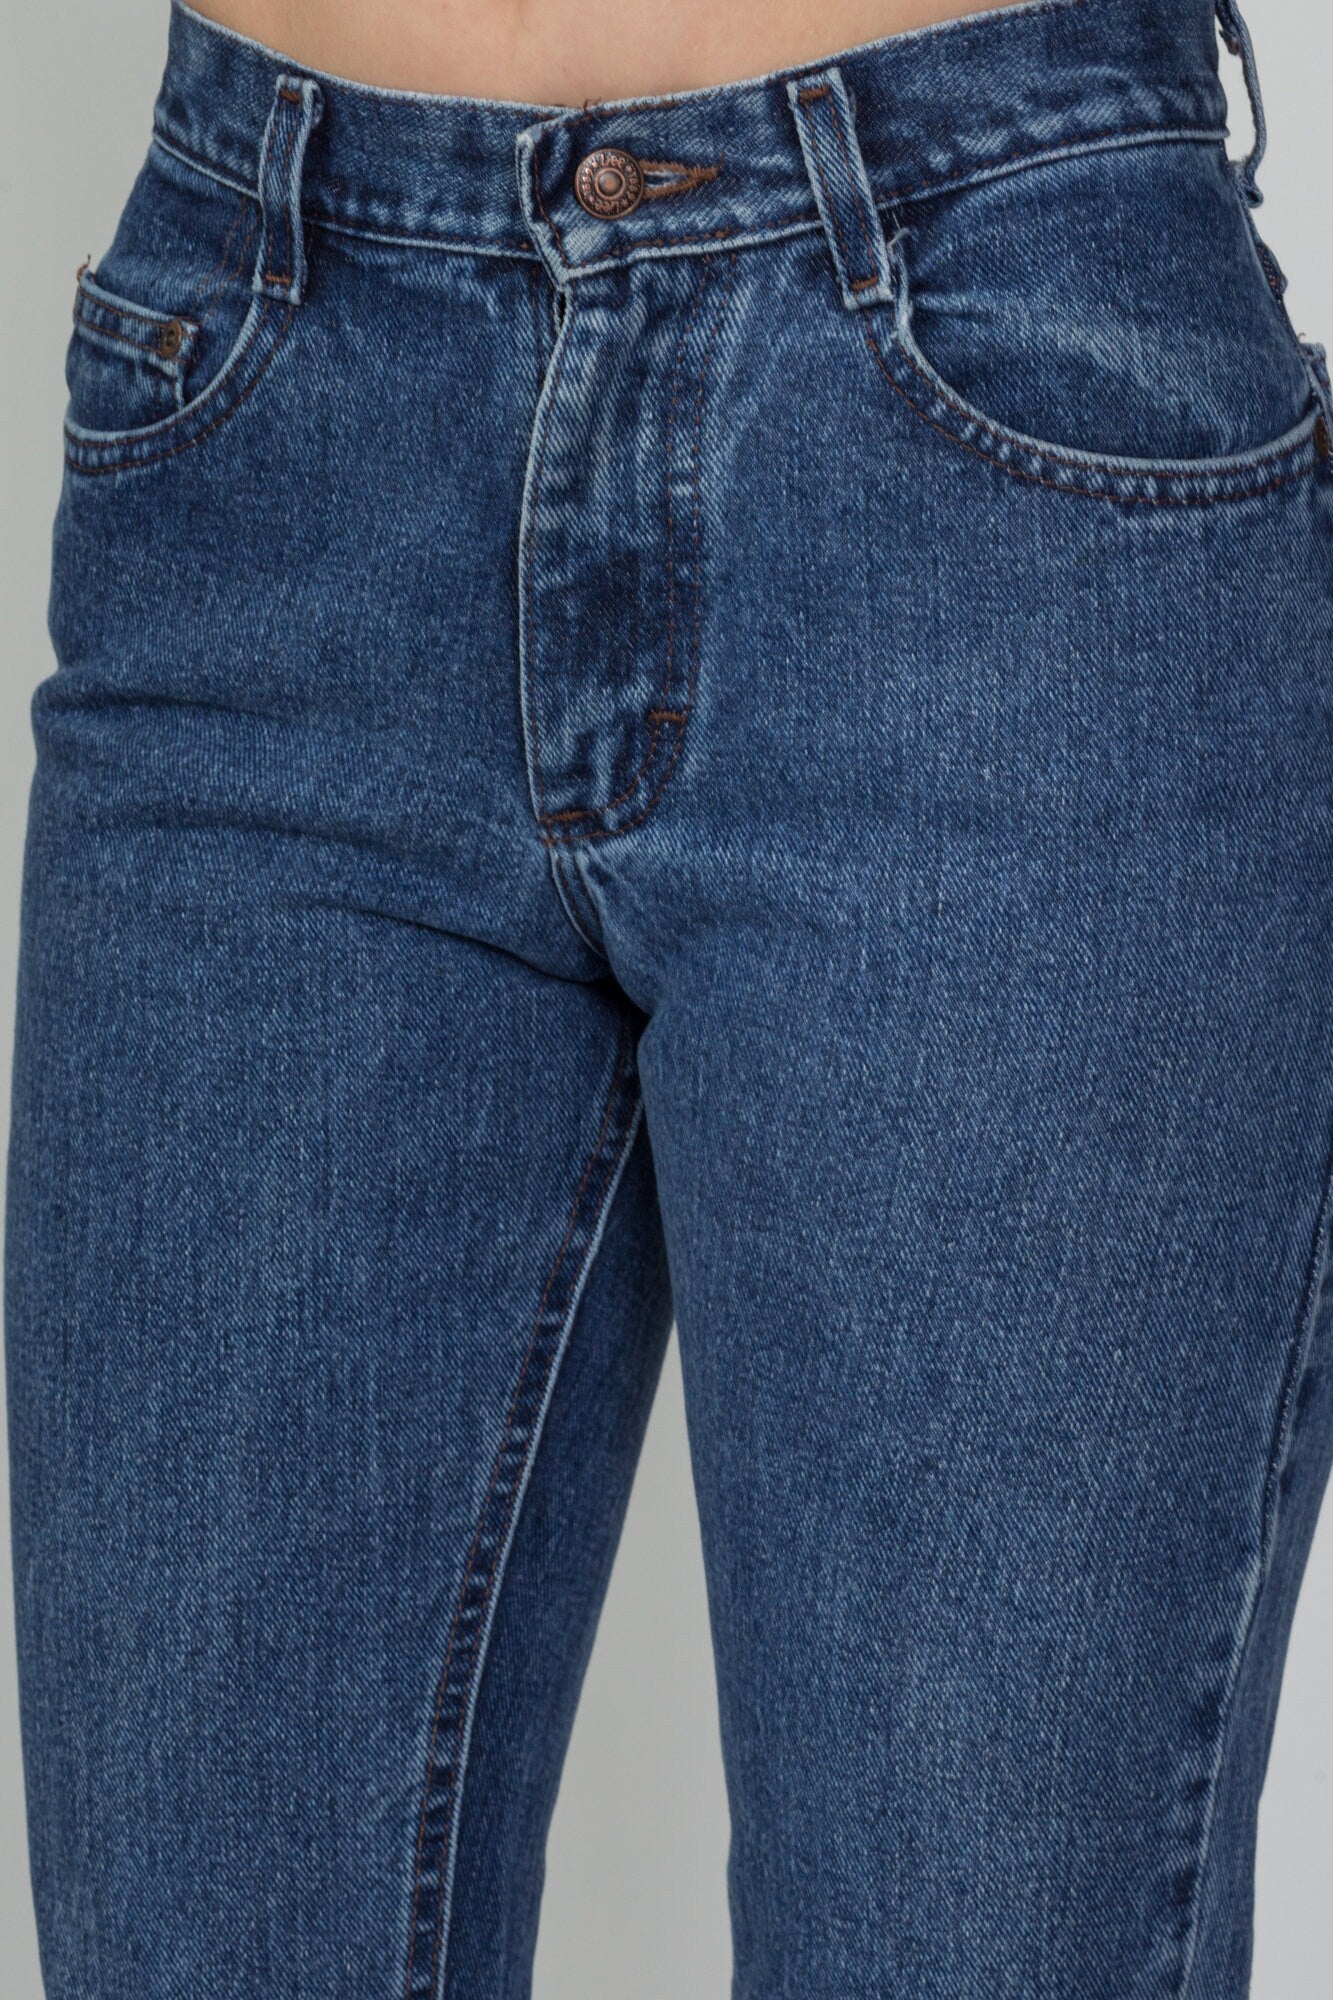 Vintage Lee Medium Wash High Waist Jeans - Petite Small, 26.5" 